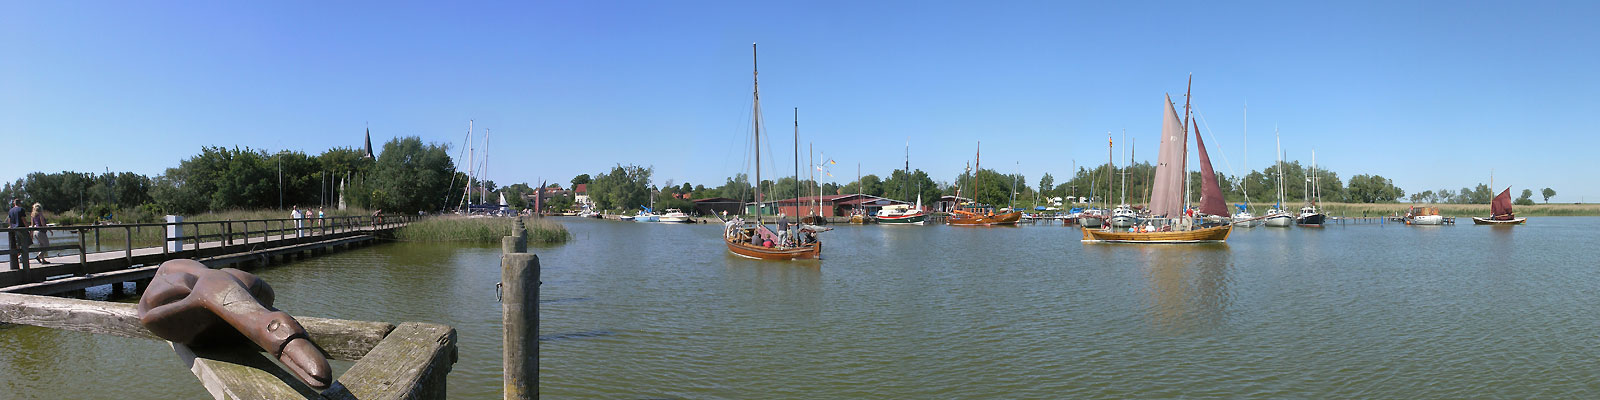 Panorama: Wustrow Zeesboote - Motivnummer: fdz-wus-04